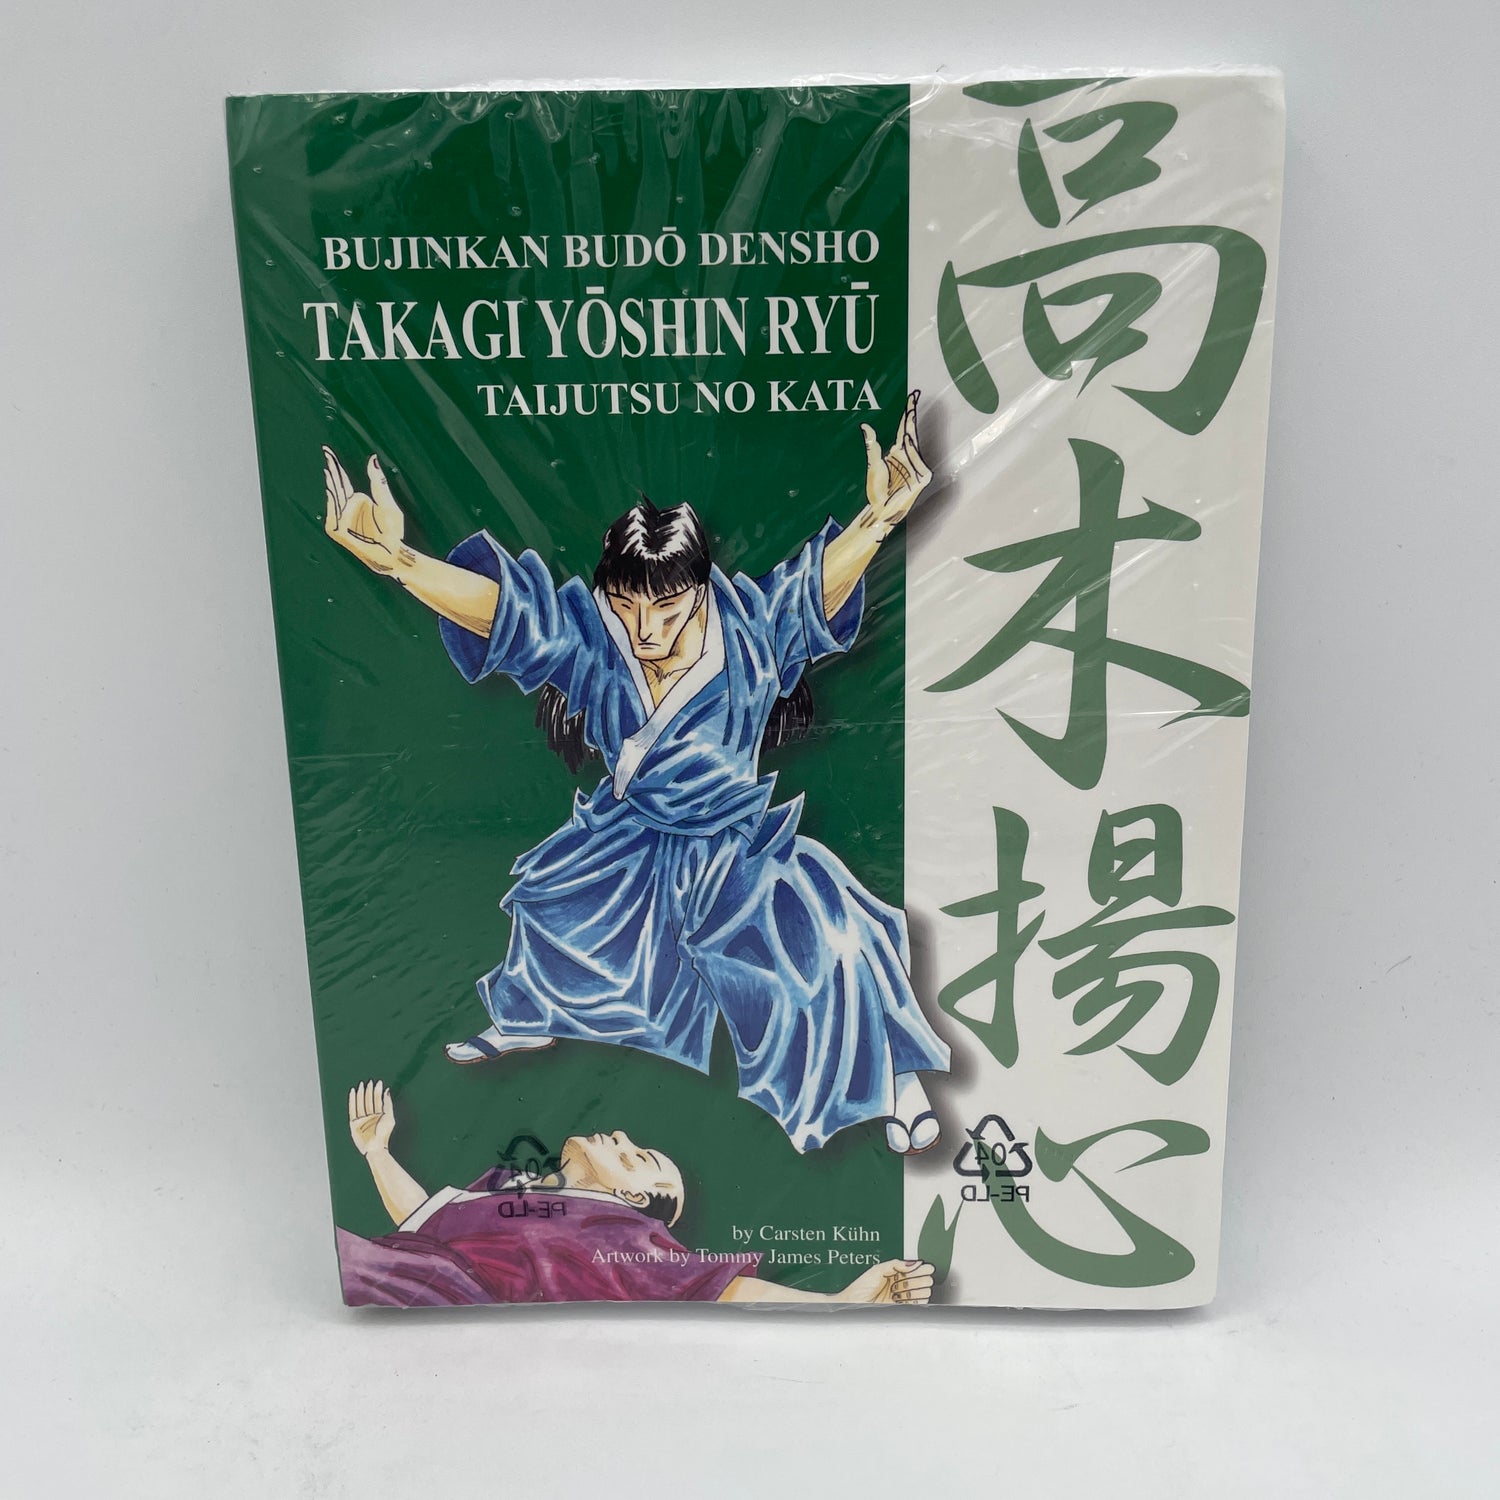 Bujinkan Budo Densho Libro 7: Takagi Yoshin Ryu por Carsten Kuhn